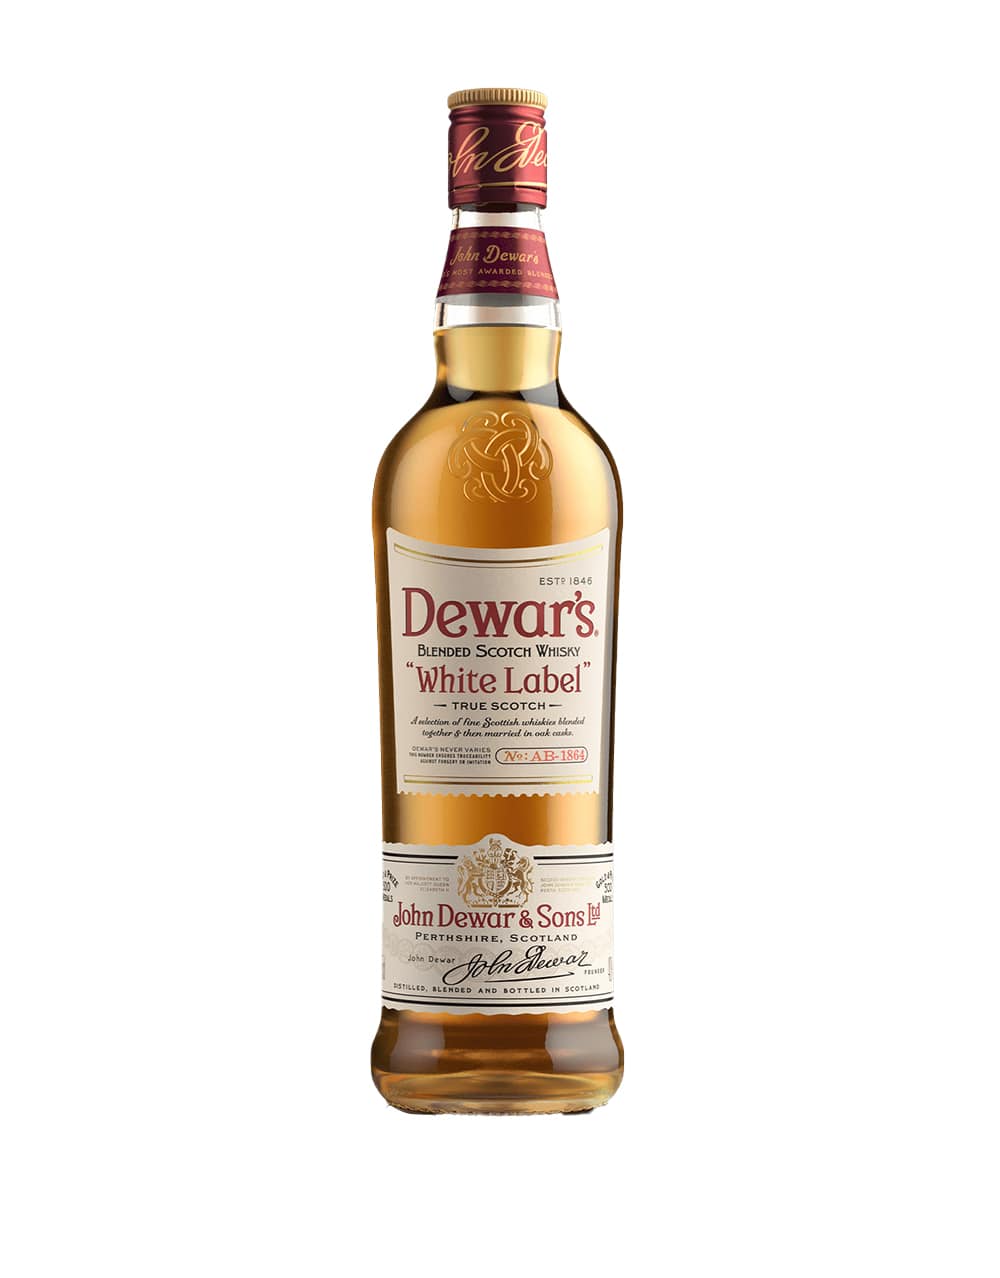 DEWAR'S White Label Scotch Whisky